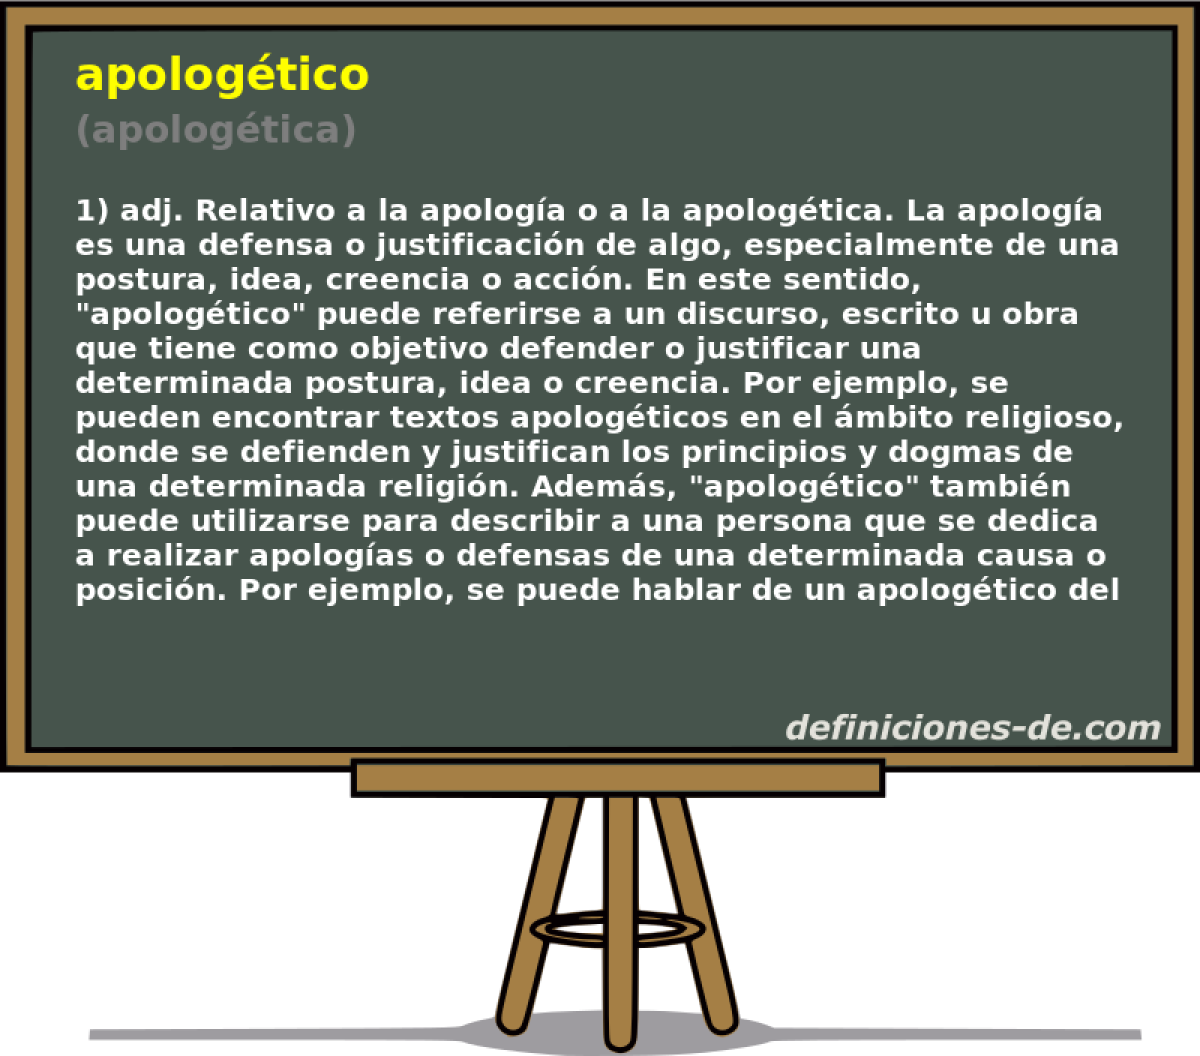 apologtico (apologtica)